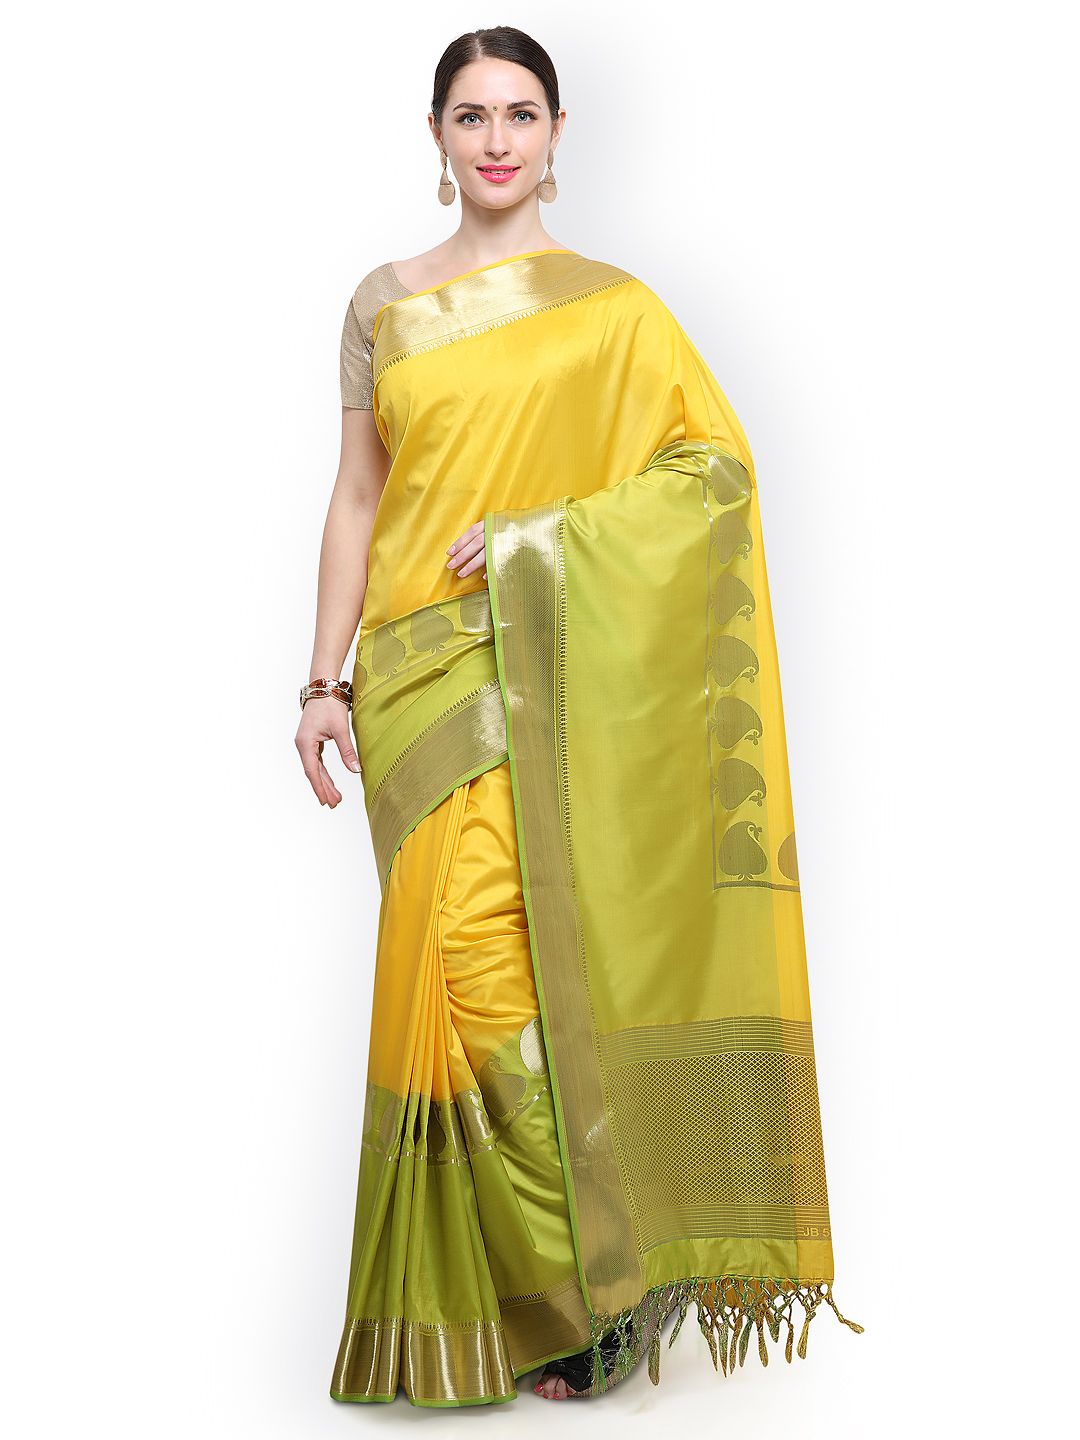 Varkala Silk Sarees Yellow & Green Silk Blend Solid Kanjeevaram Saree Price in India